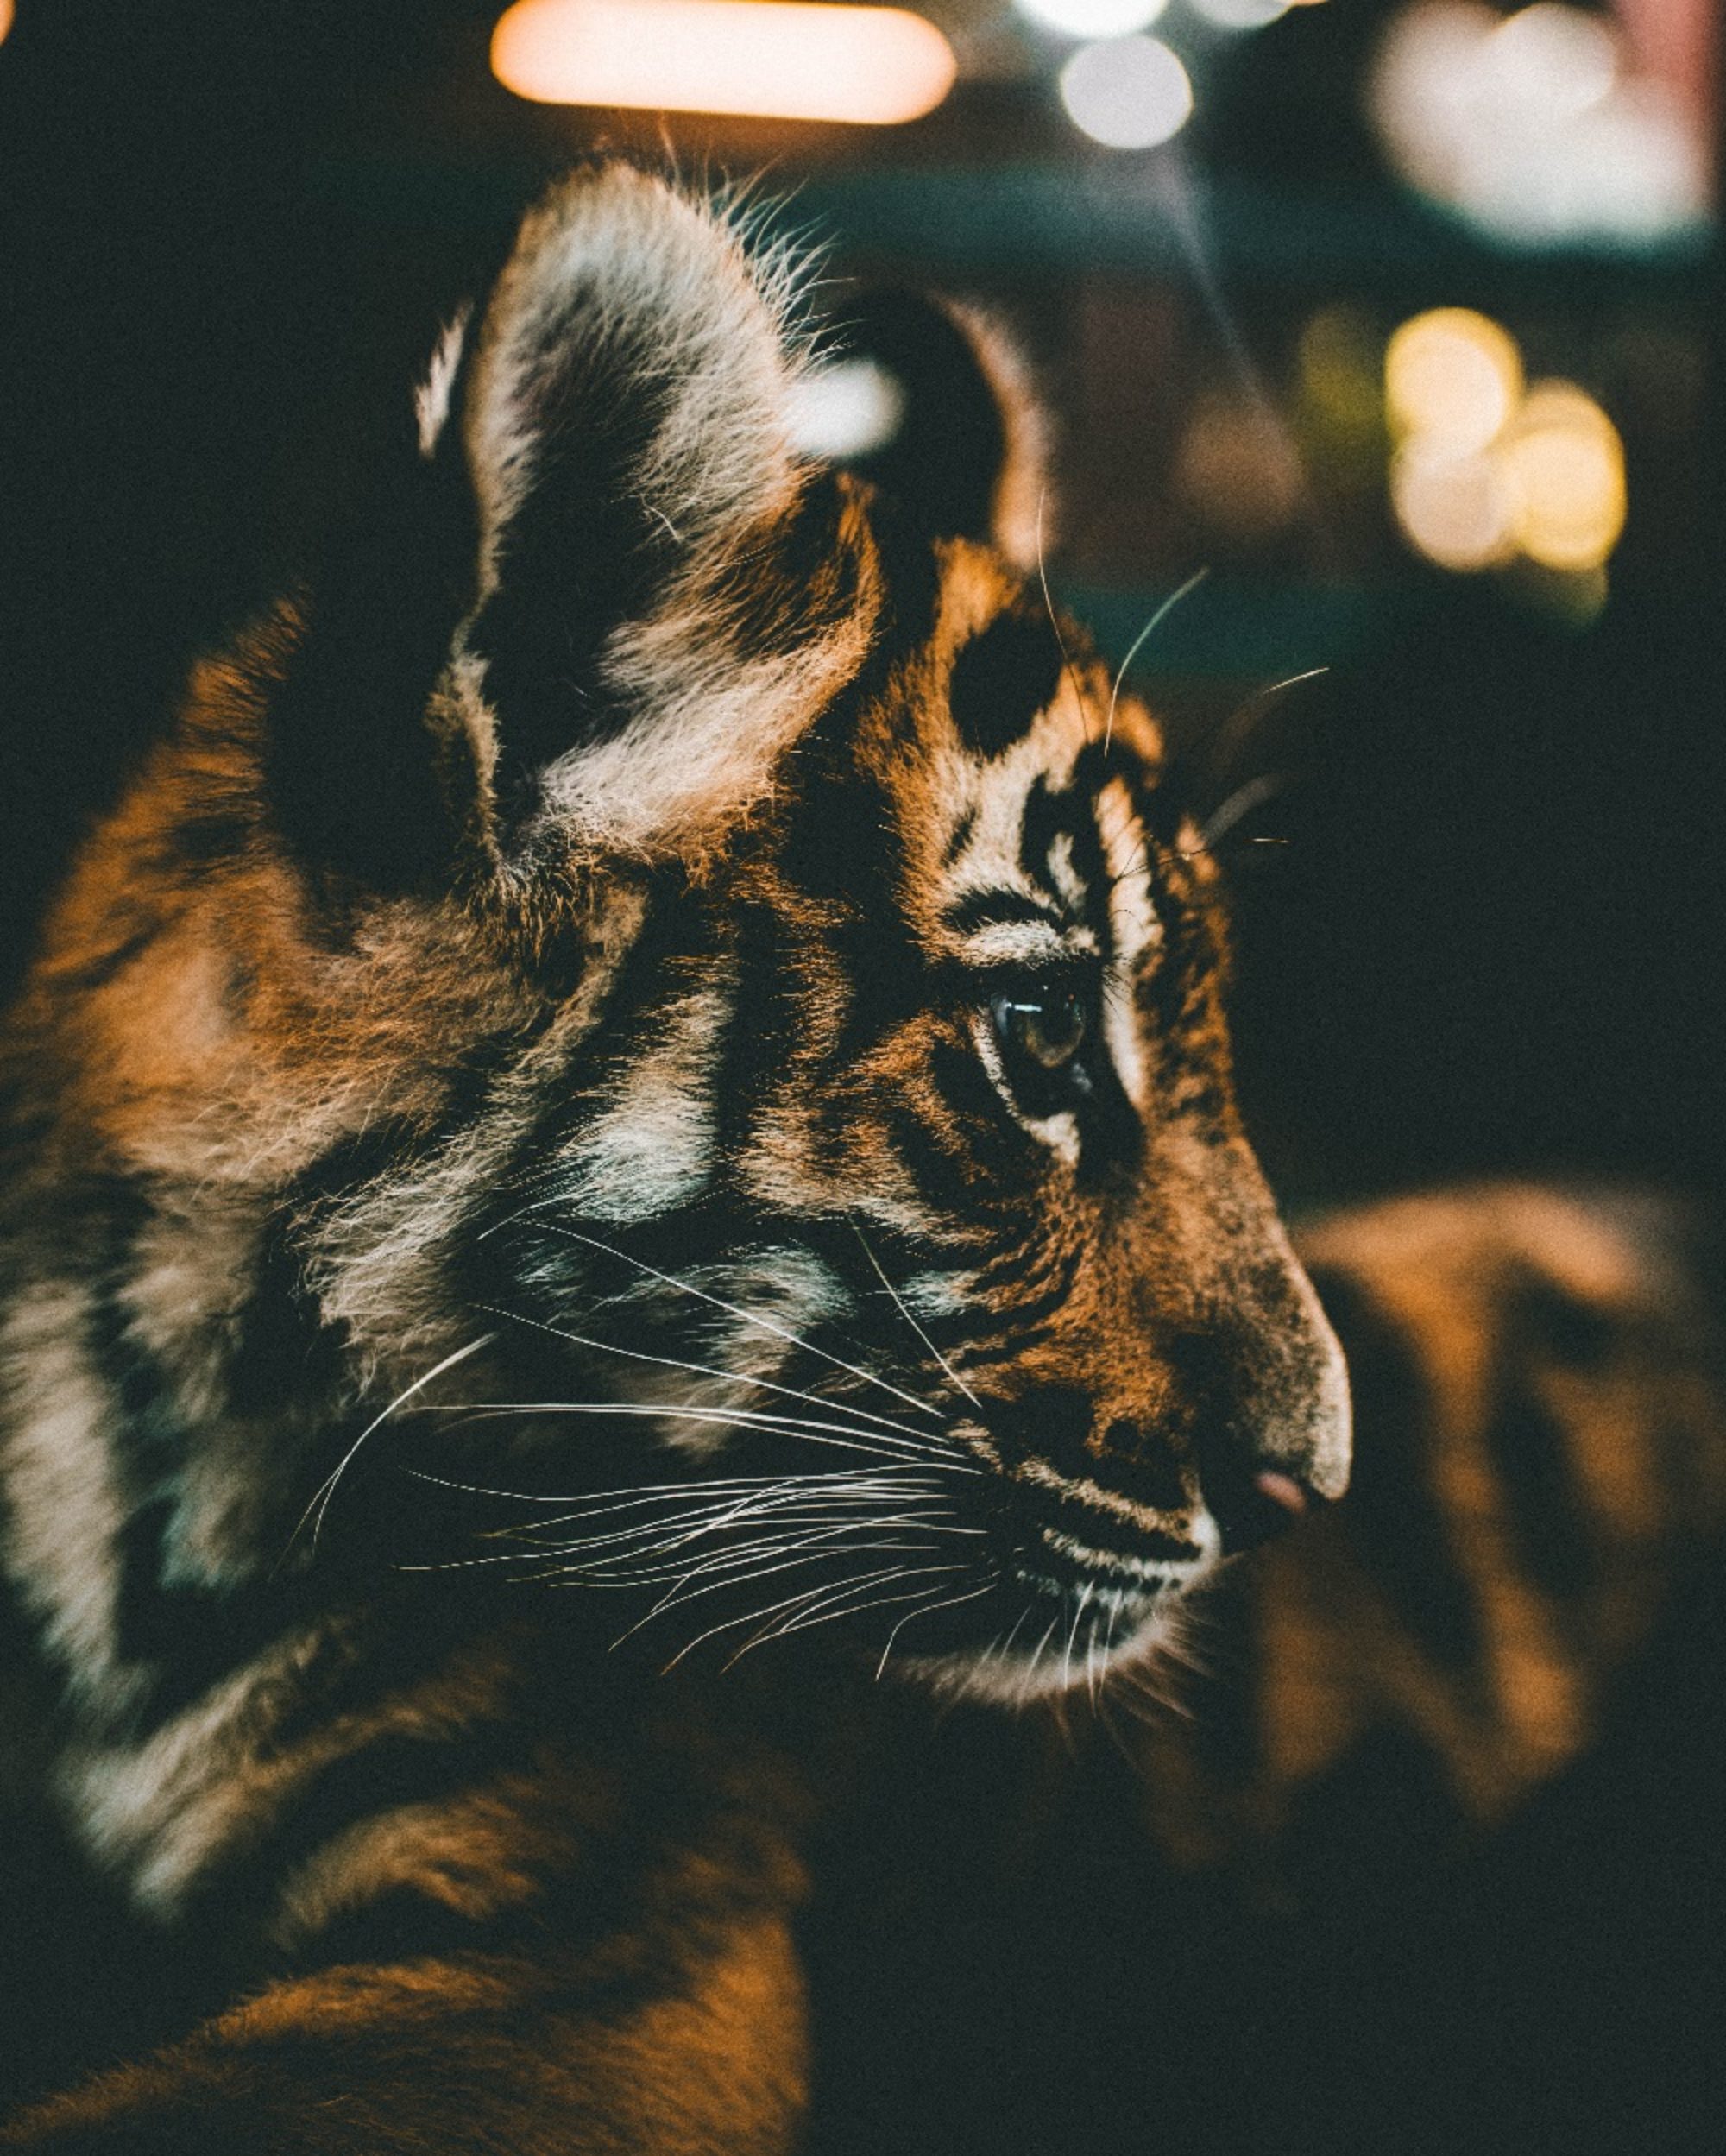 Image of a tiger cub